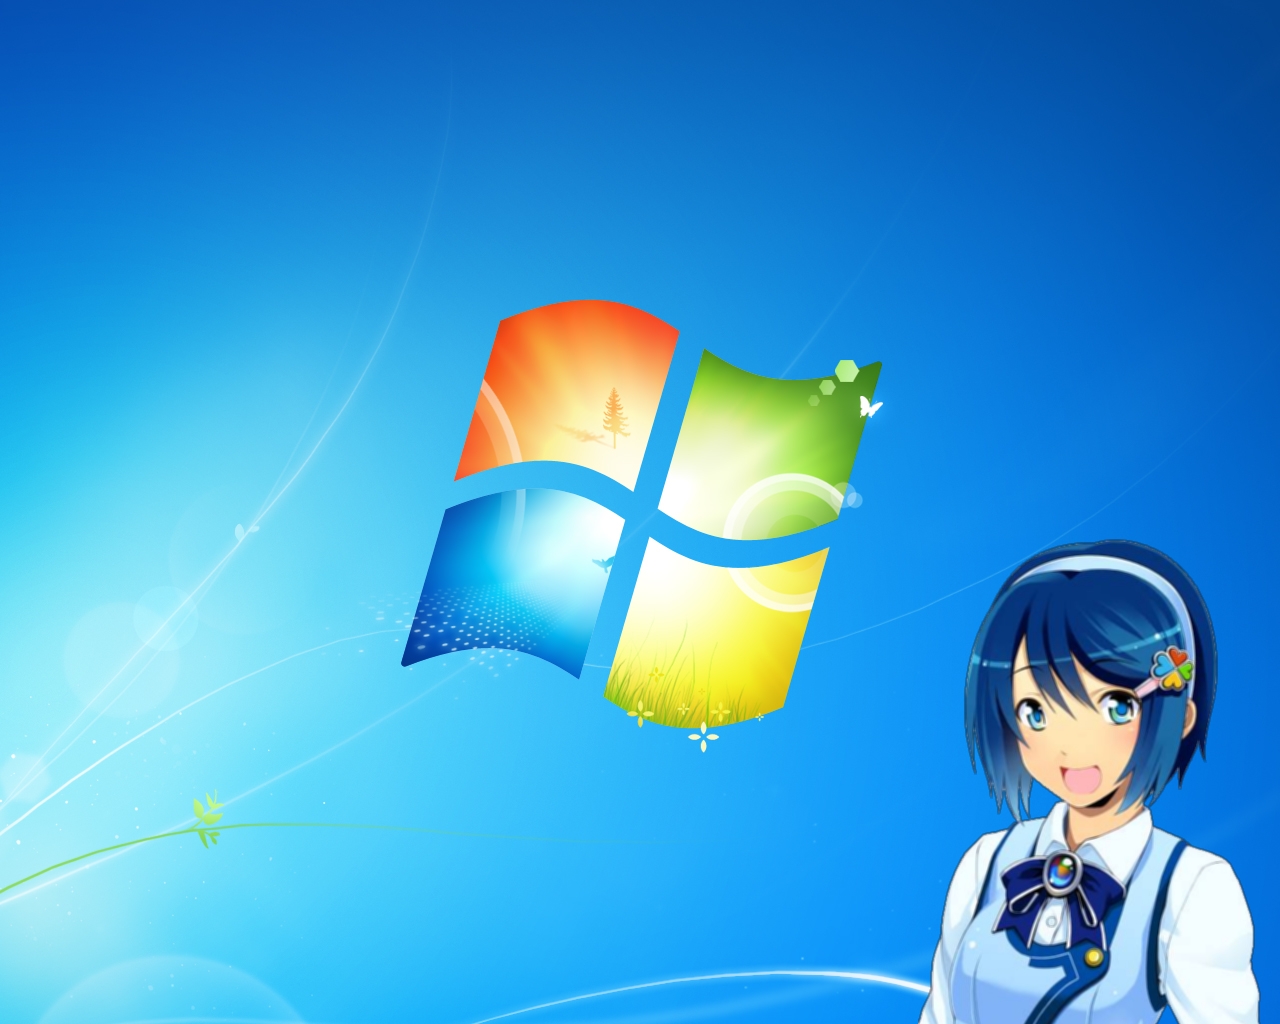 Аниме Windows 7